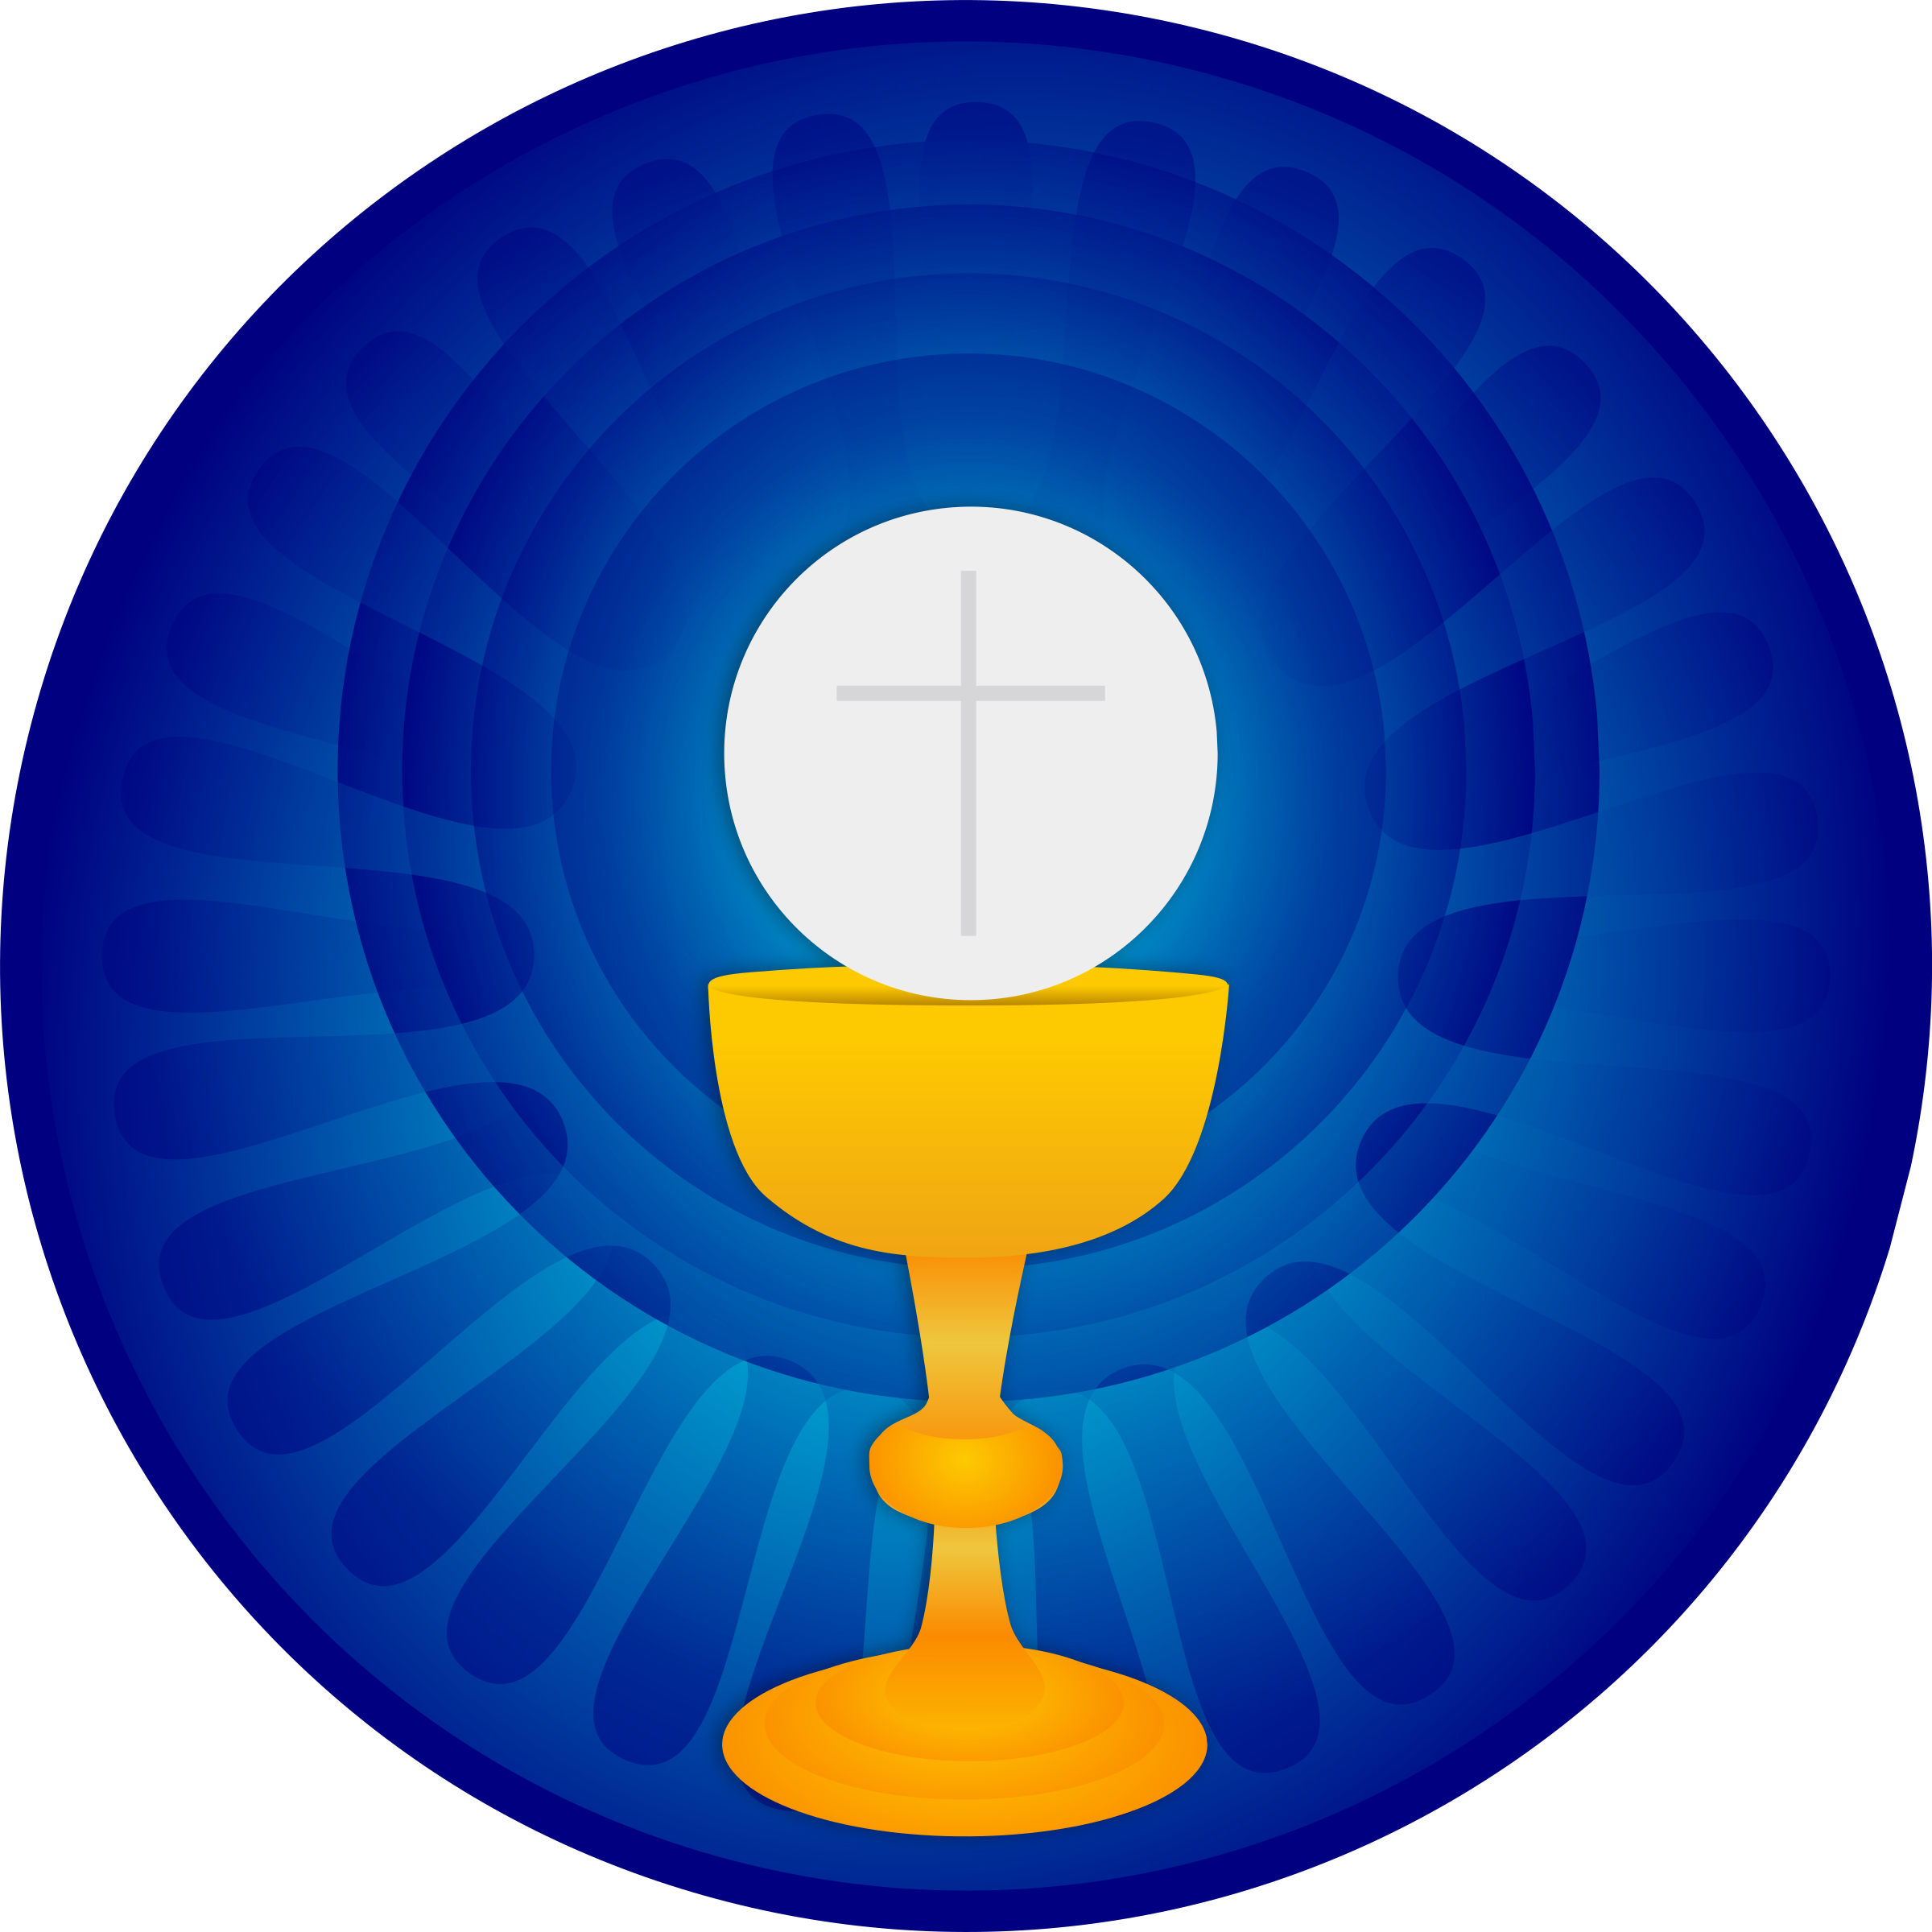 Eucharist Images Clip Art - ClipArt Best